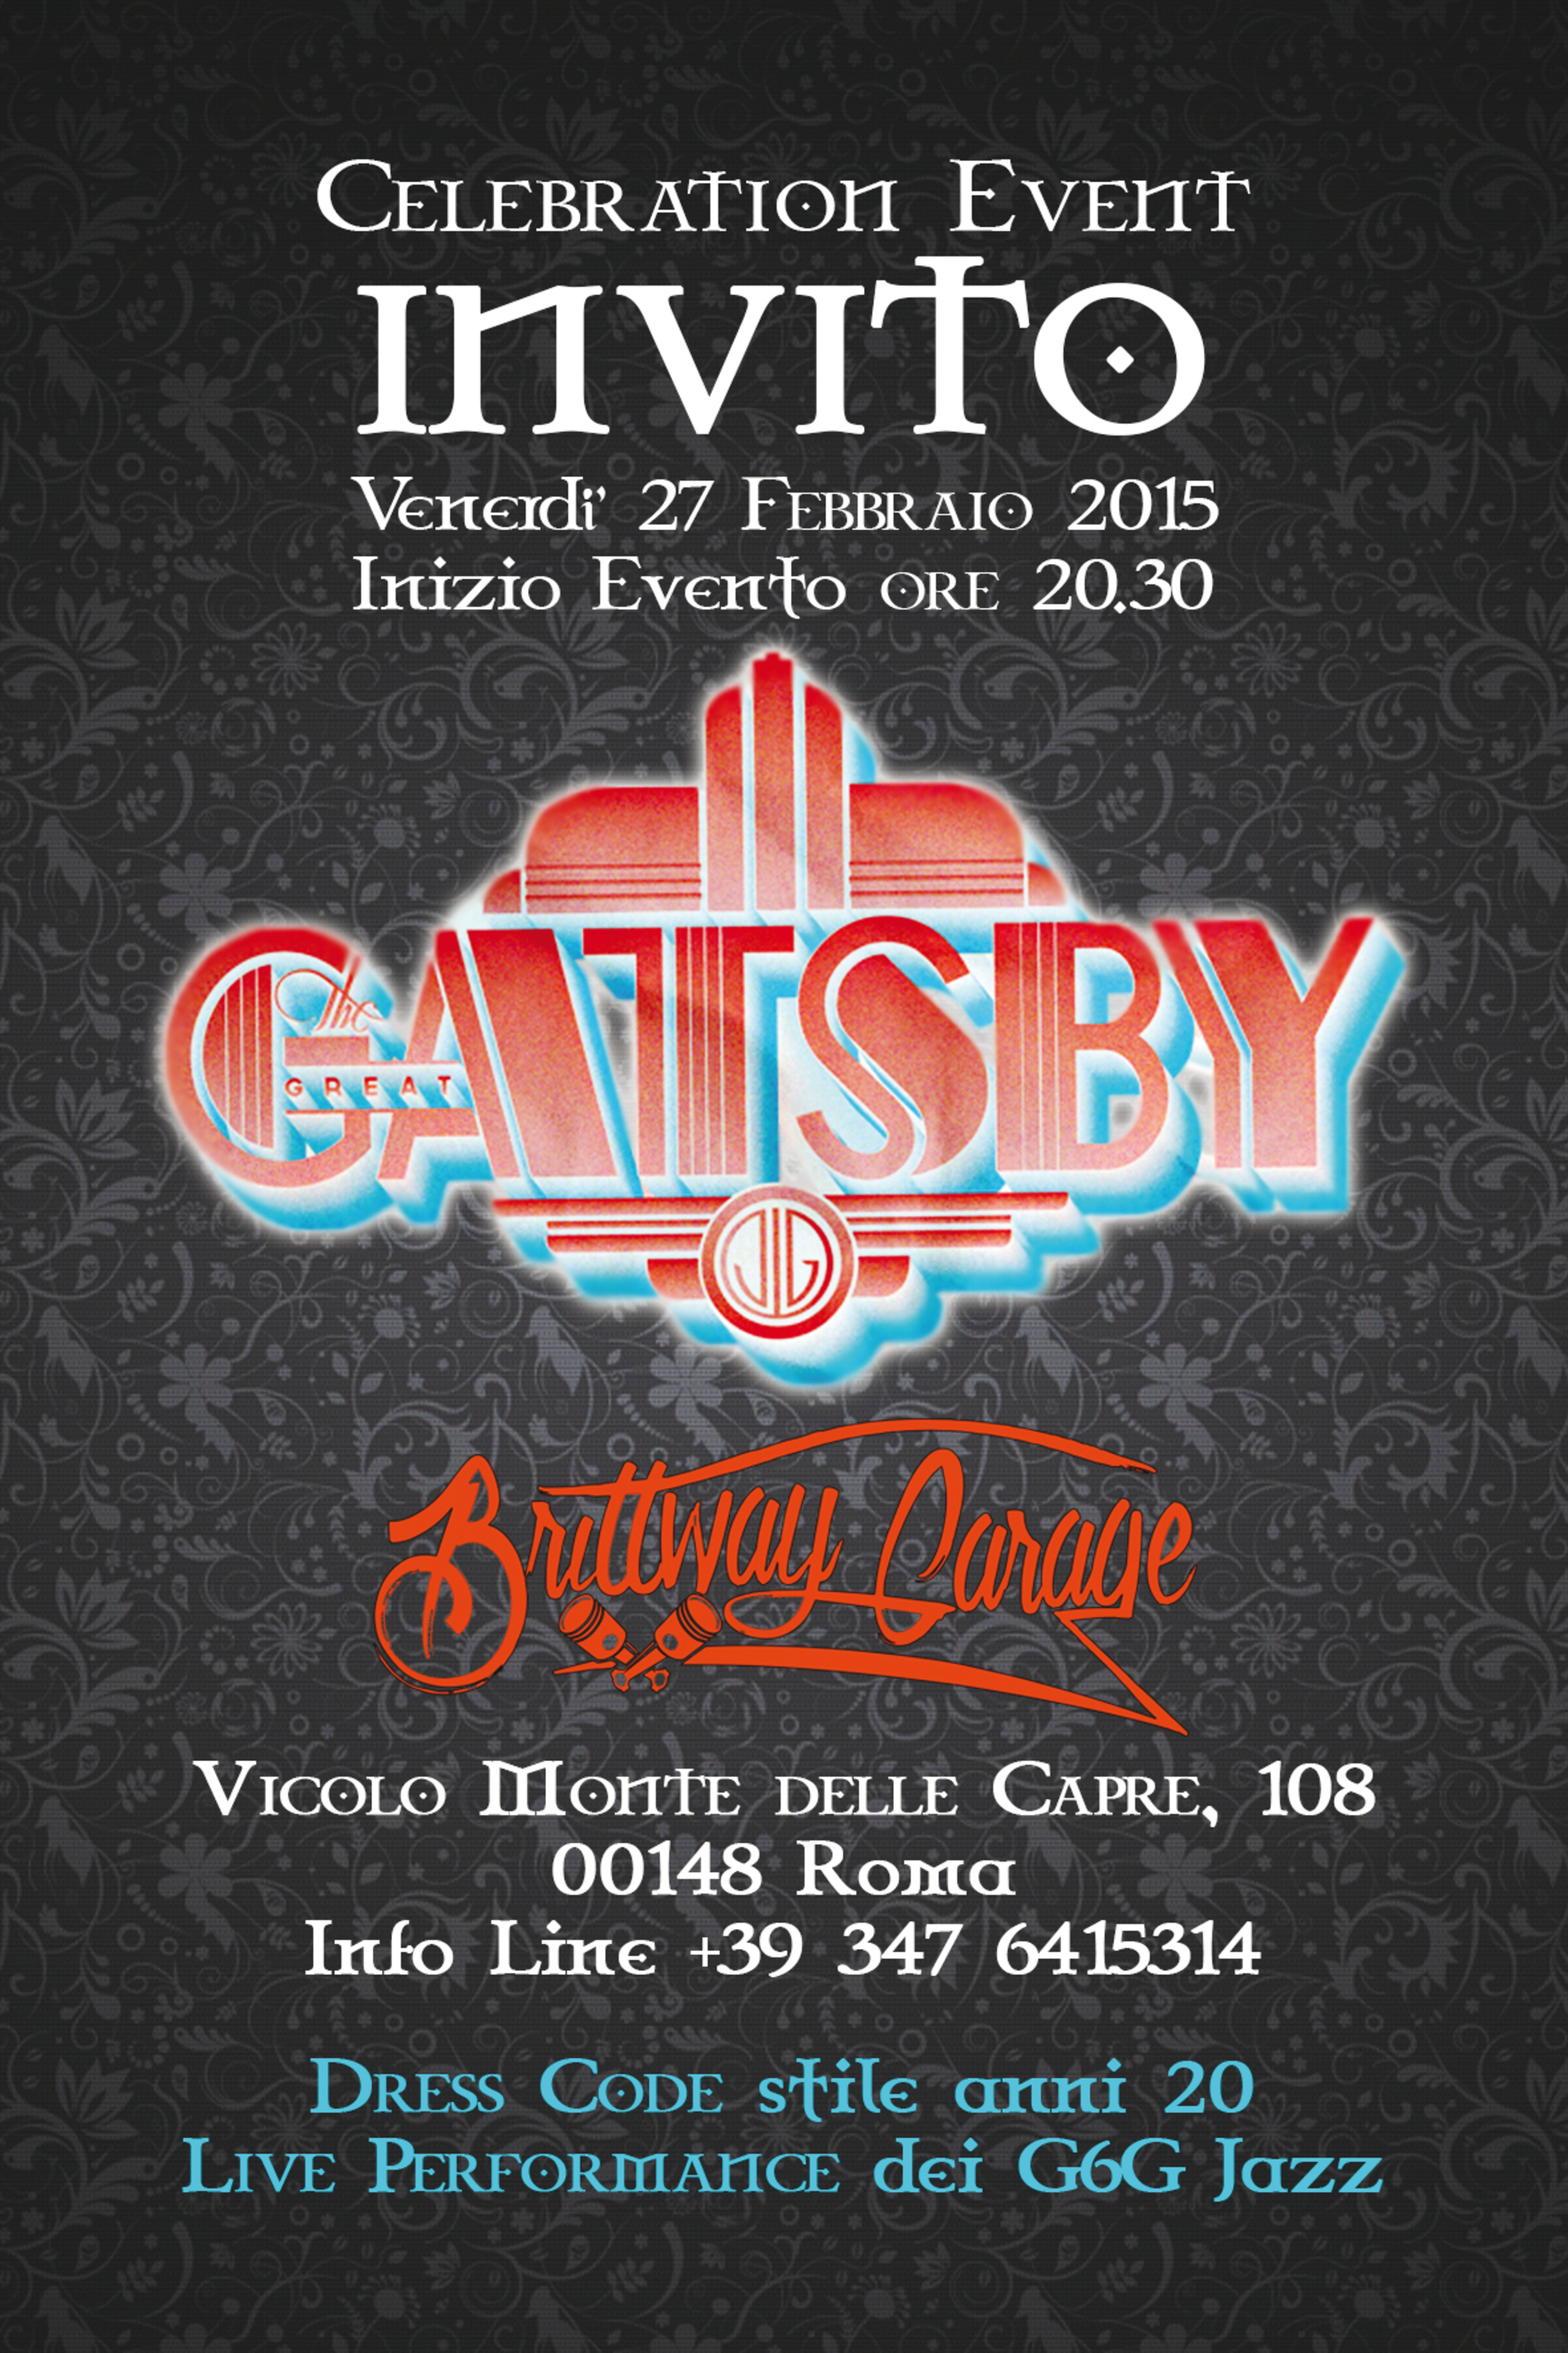 Brittway Garage Roma, serata dedicata al Grande Gatsby